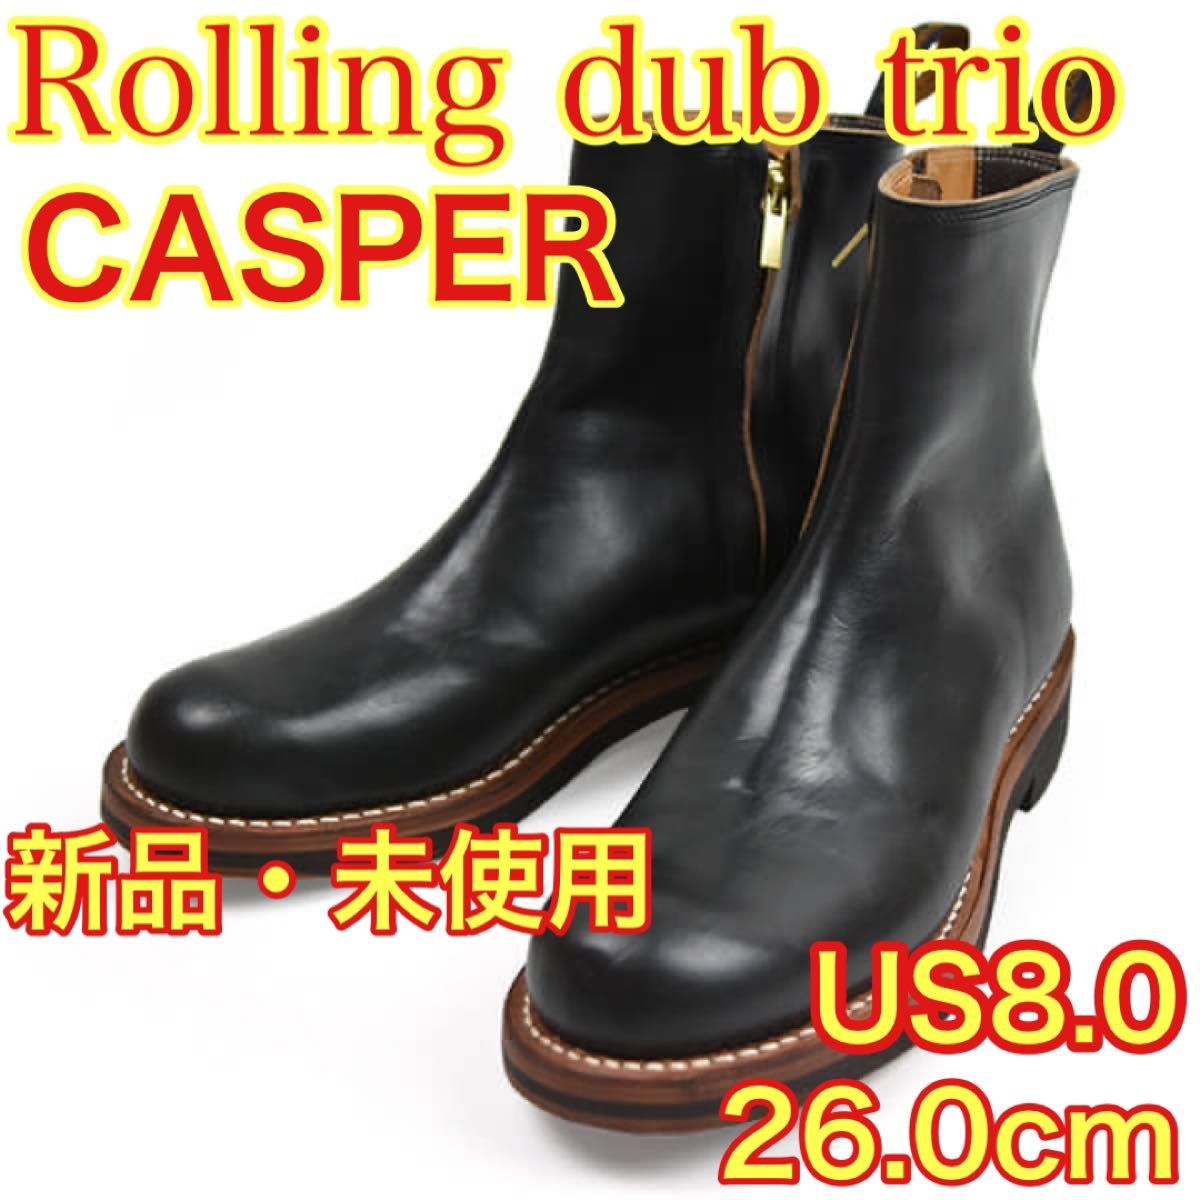 ROLLING DUB TRIO CASPER US8.0 26.0cm-